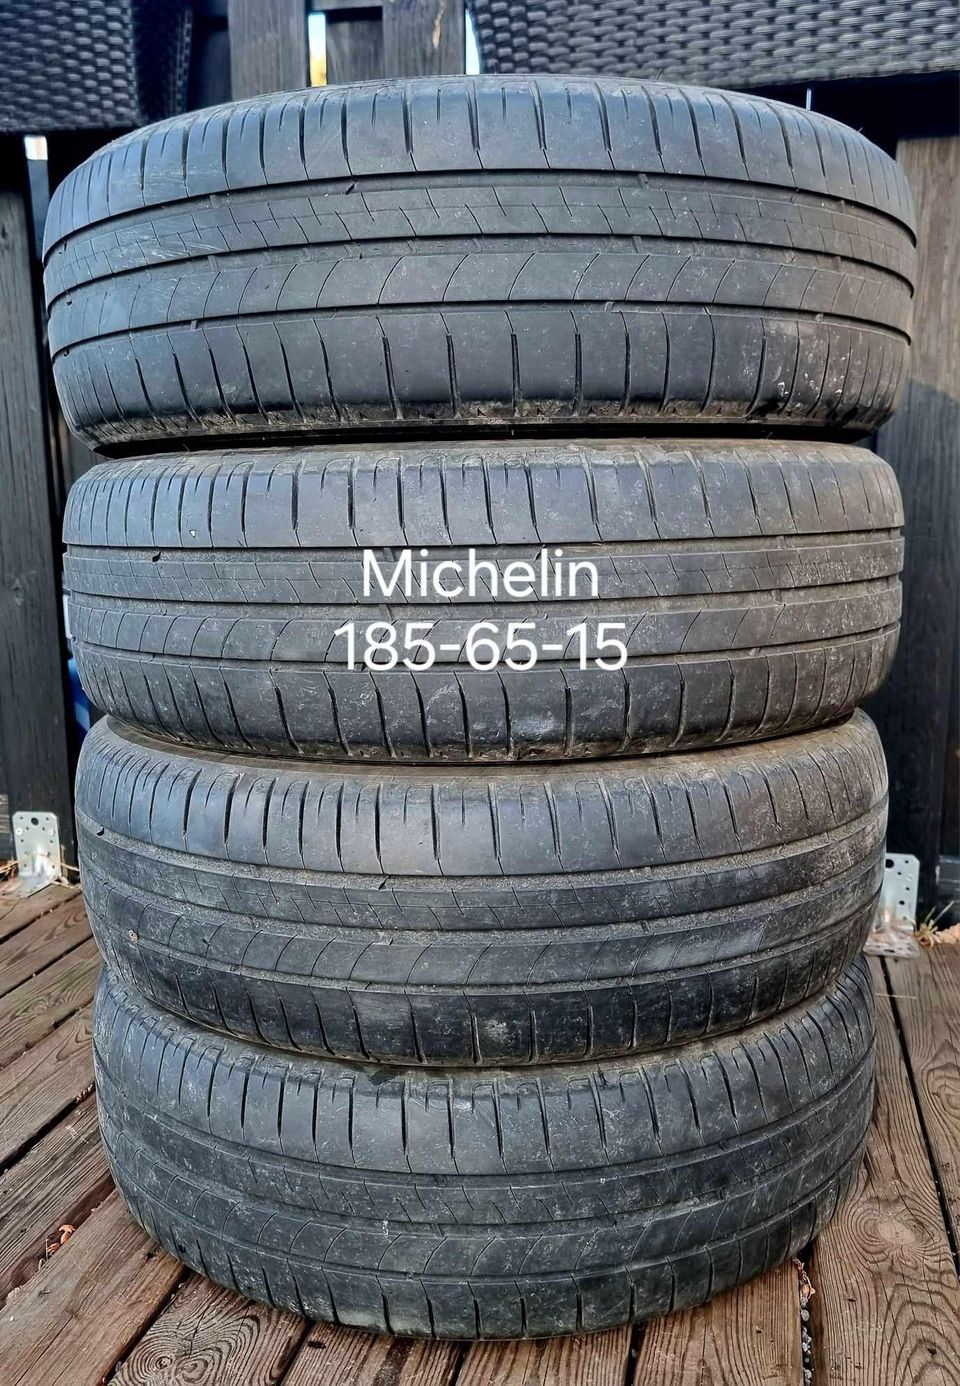 Michelin 185-65-15 kesärenkaat